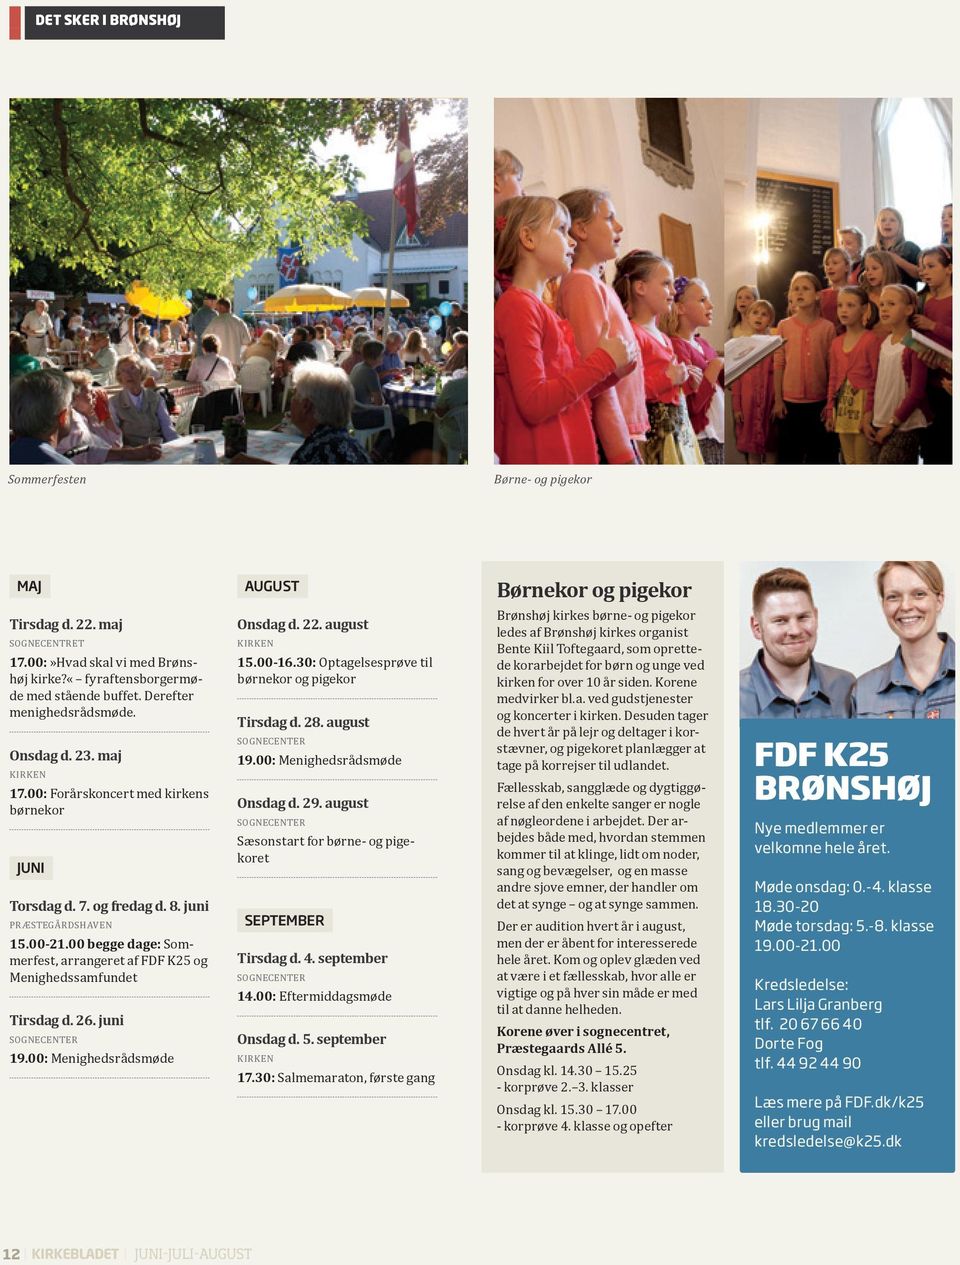 00 begge dage: Sommerfest, arrangeret af FDF K25 og Menighedssamfundet Tirsdag d. 26. juni sognecenter 19.00: Menighedsrådsmøde Onsdag d. 22. august kirken 15.00-16.